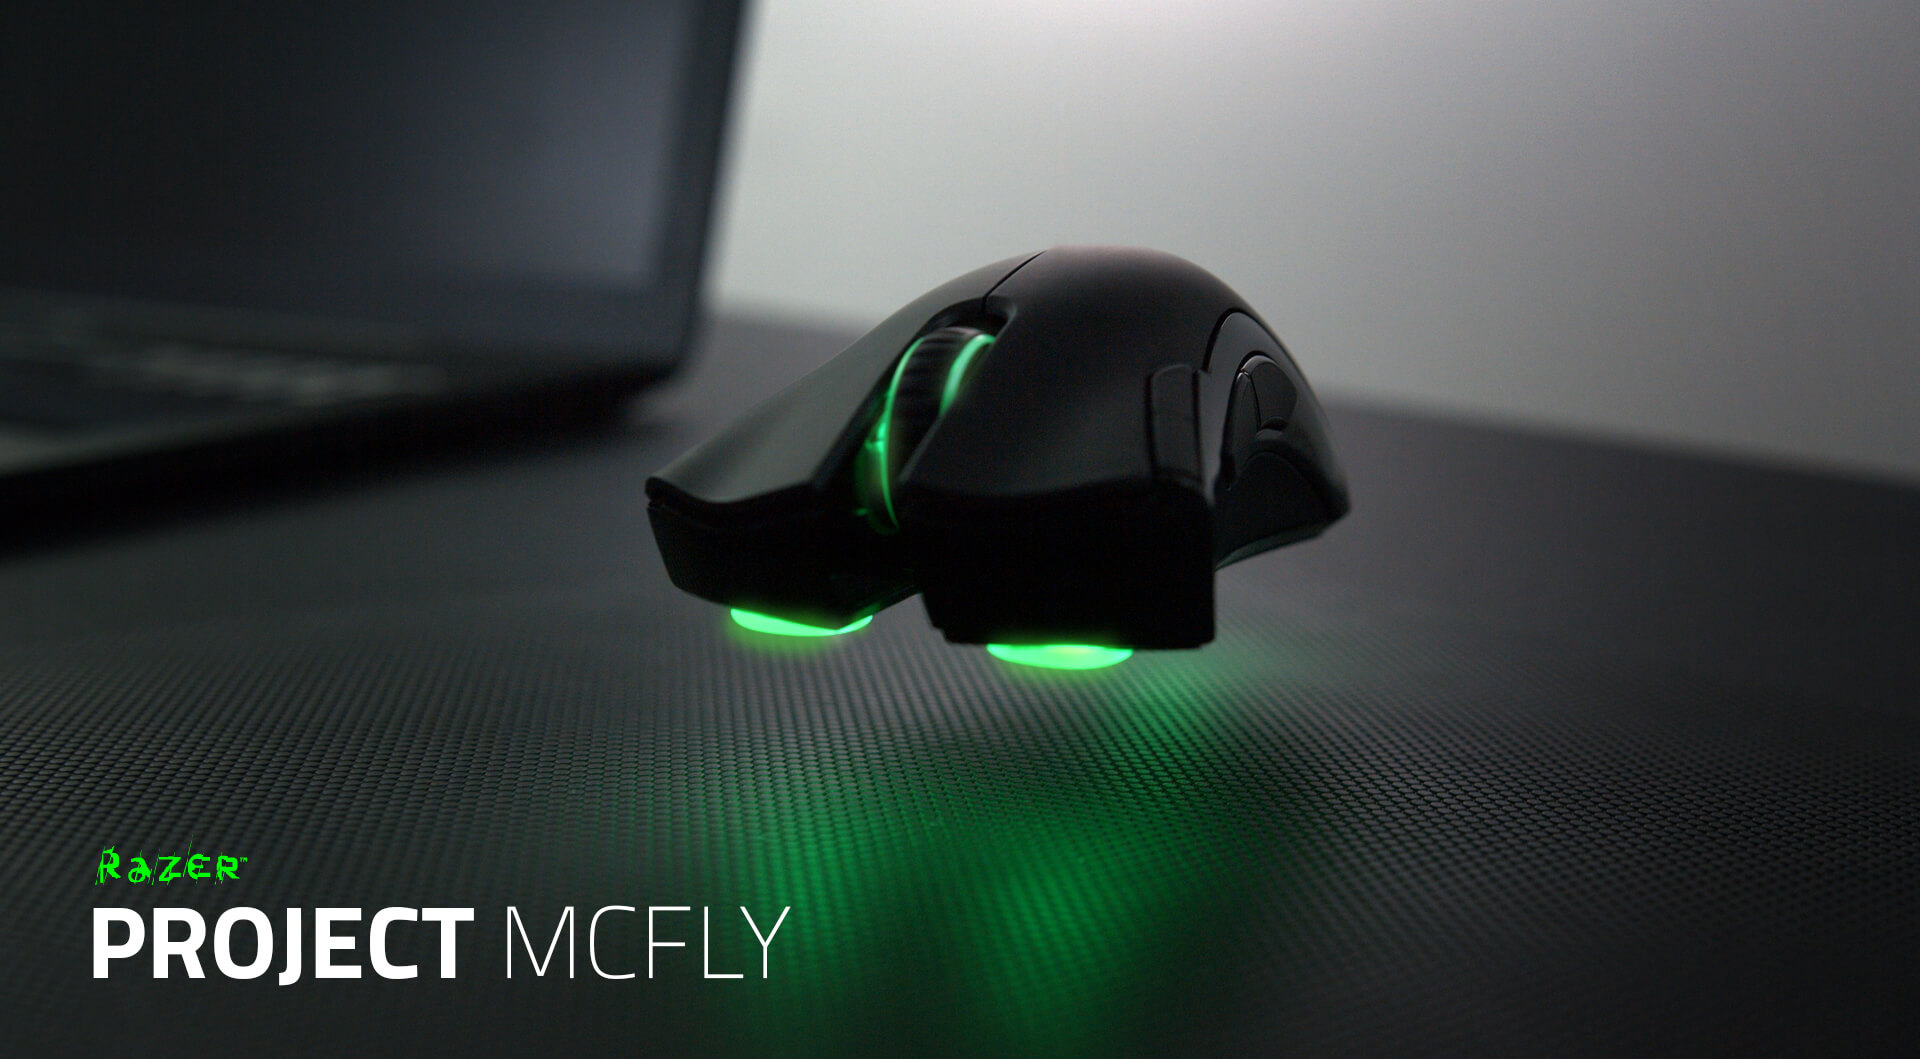 RAZER PROJECT MCFLY uçabilen mouse